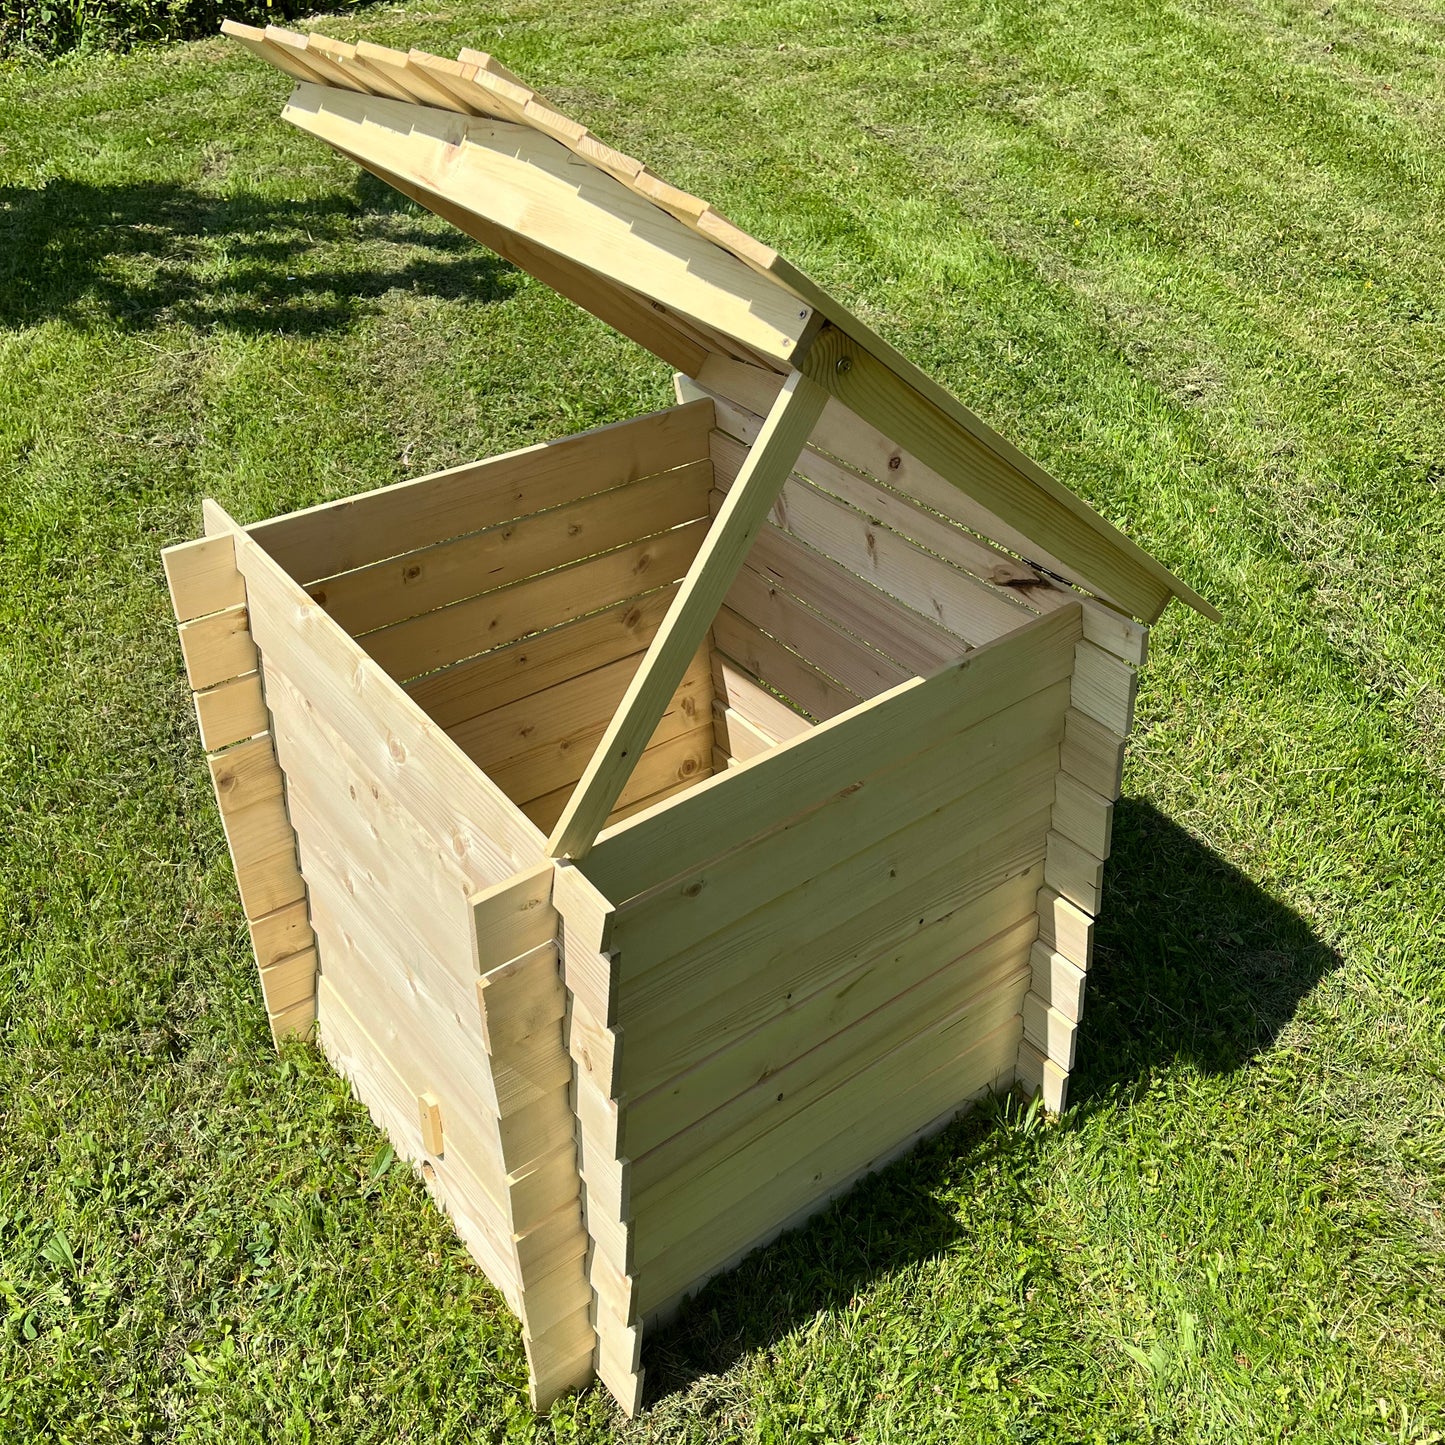 Wooden Beehive Slatted Garden Composter (74cm x 80cm)